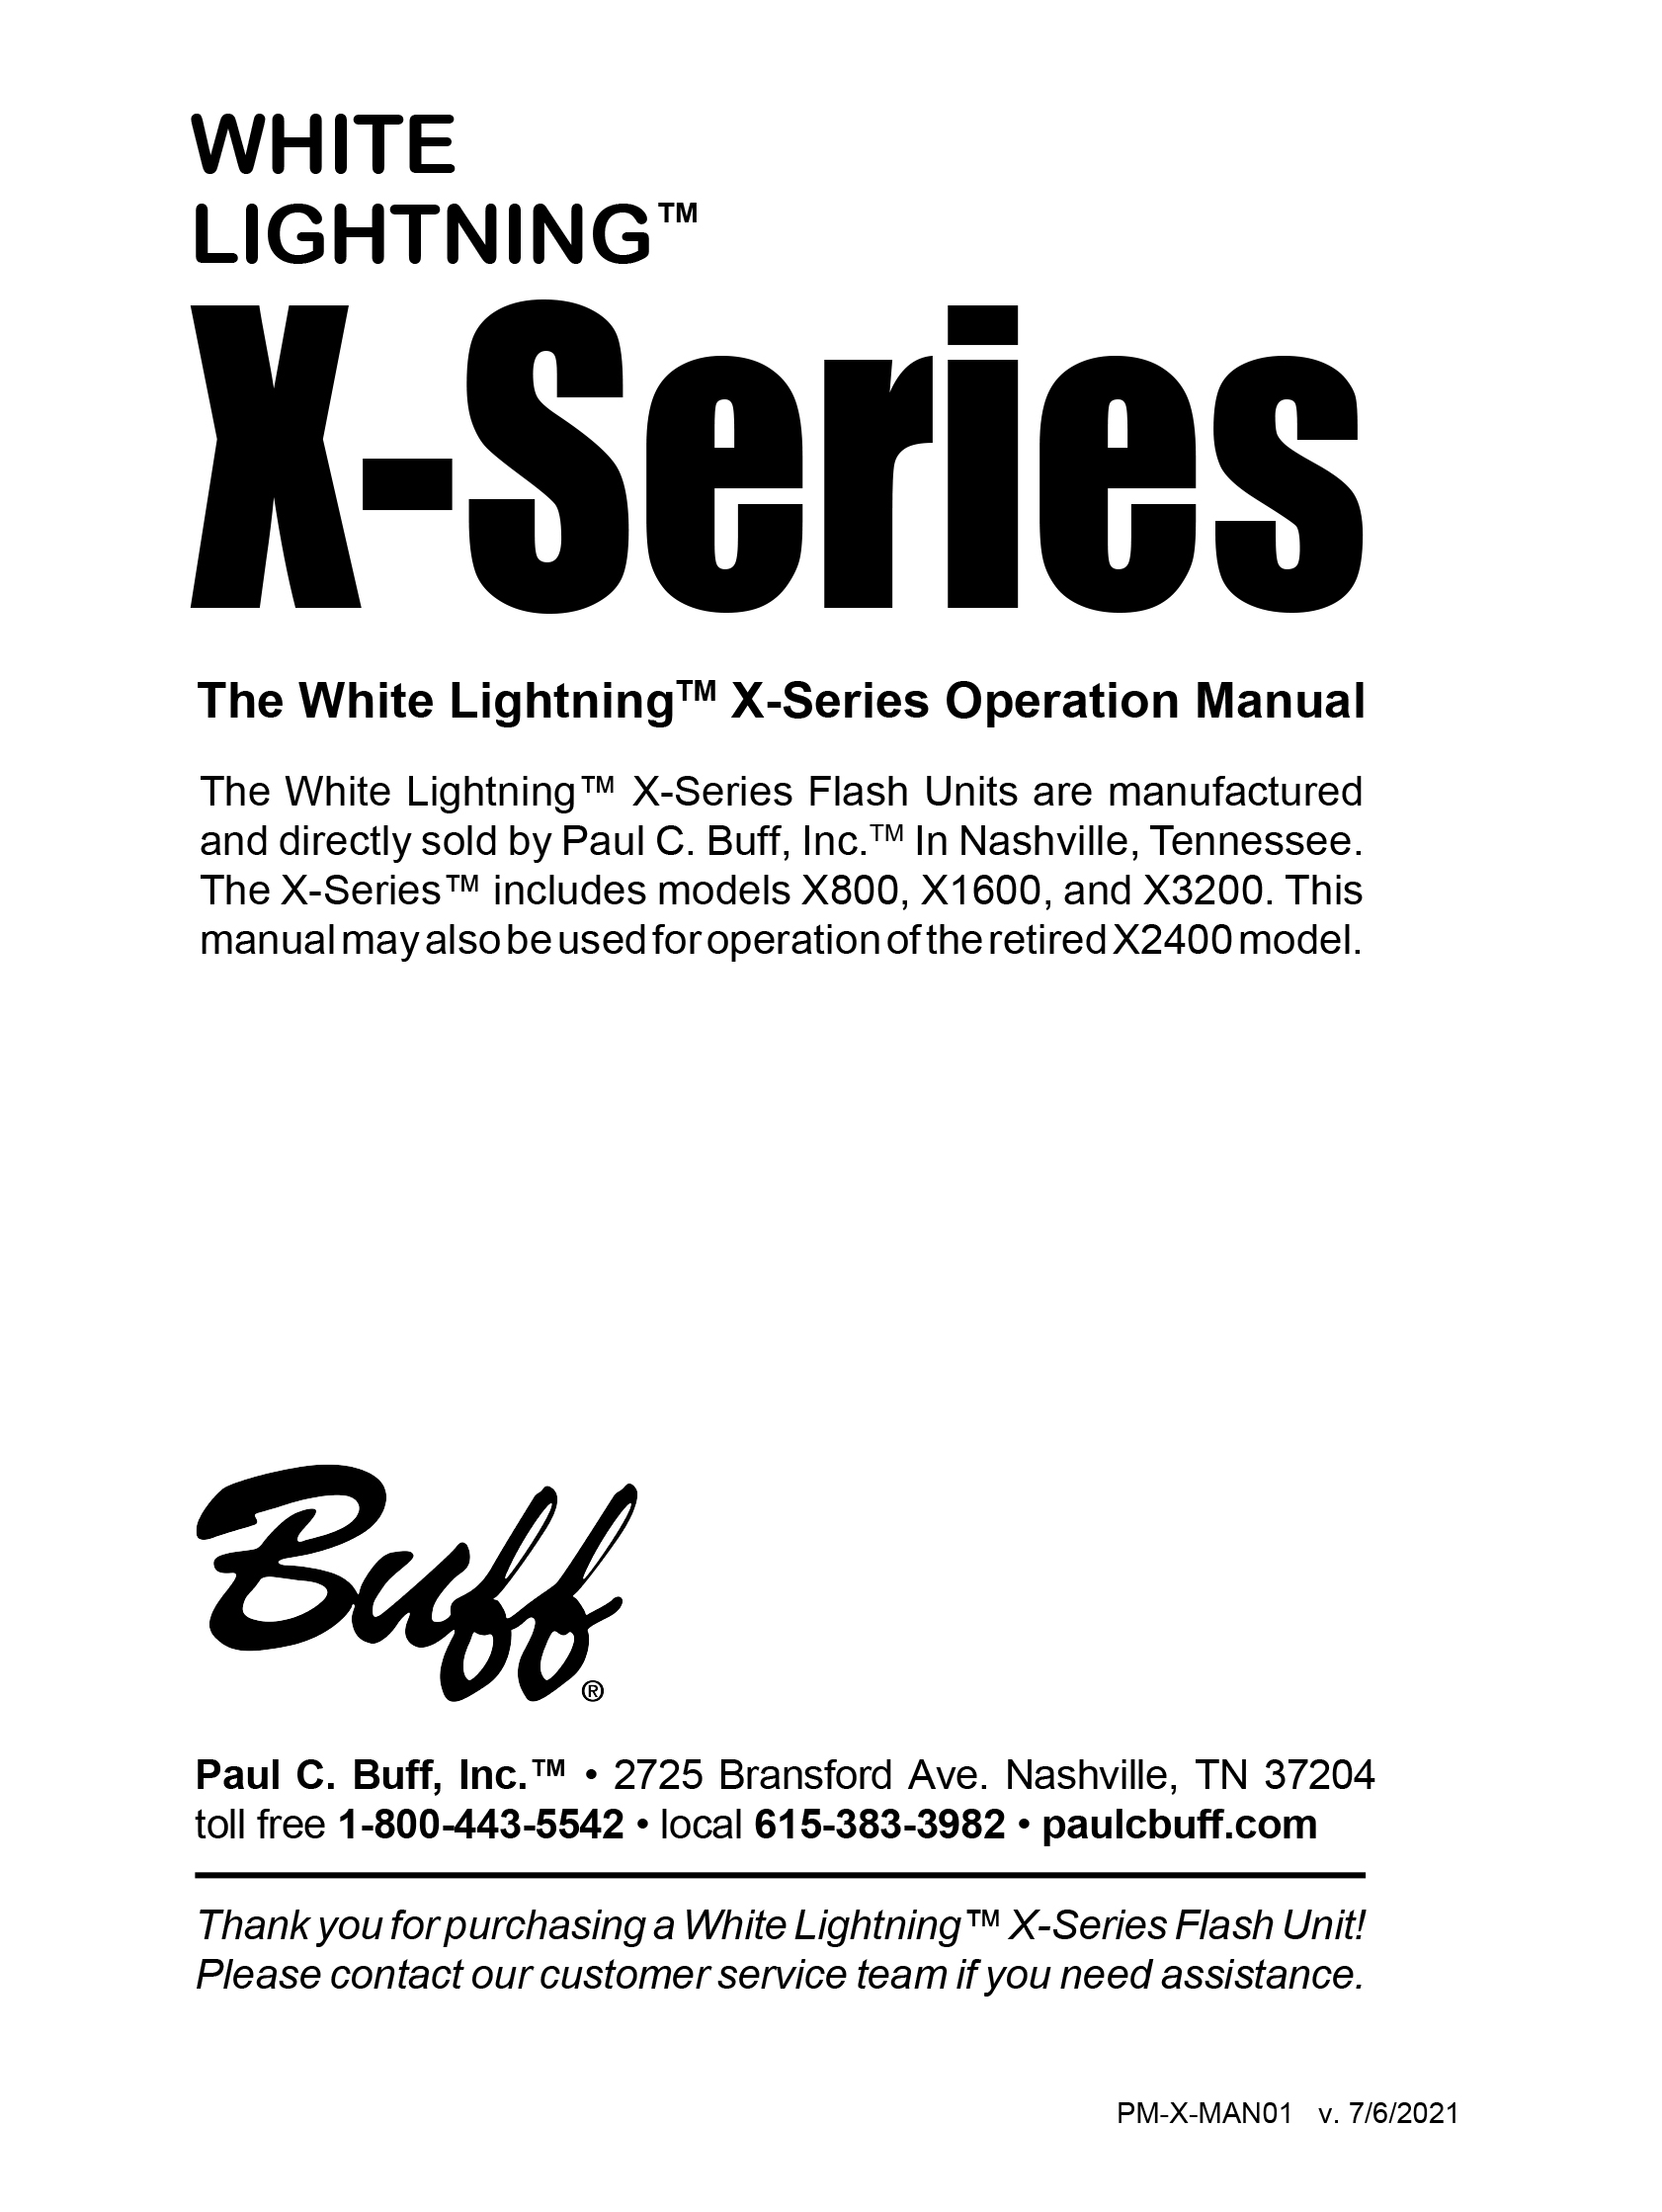 White Lightning X-Series Manual